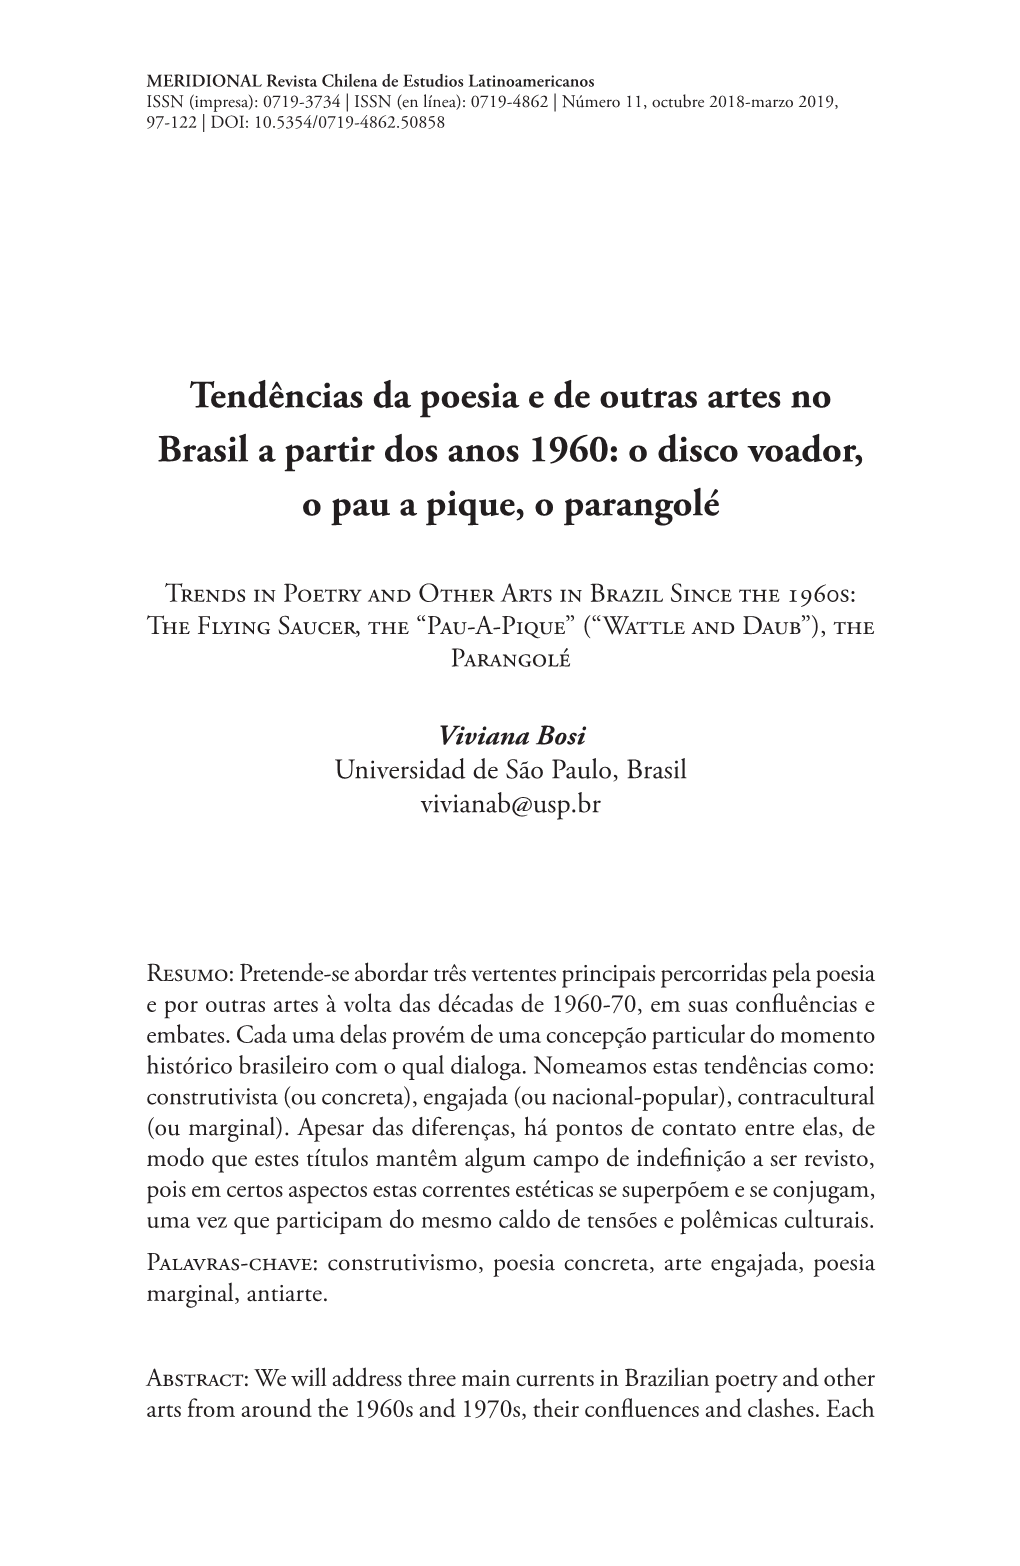 Tendências Da Poesia E De Outras Artes No Brasil a Partir Dos Anos 1960: O Disco Voador, O Pau a Pique, O Parangolé